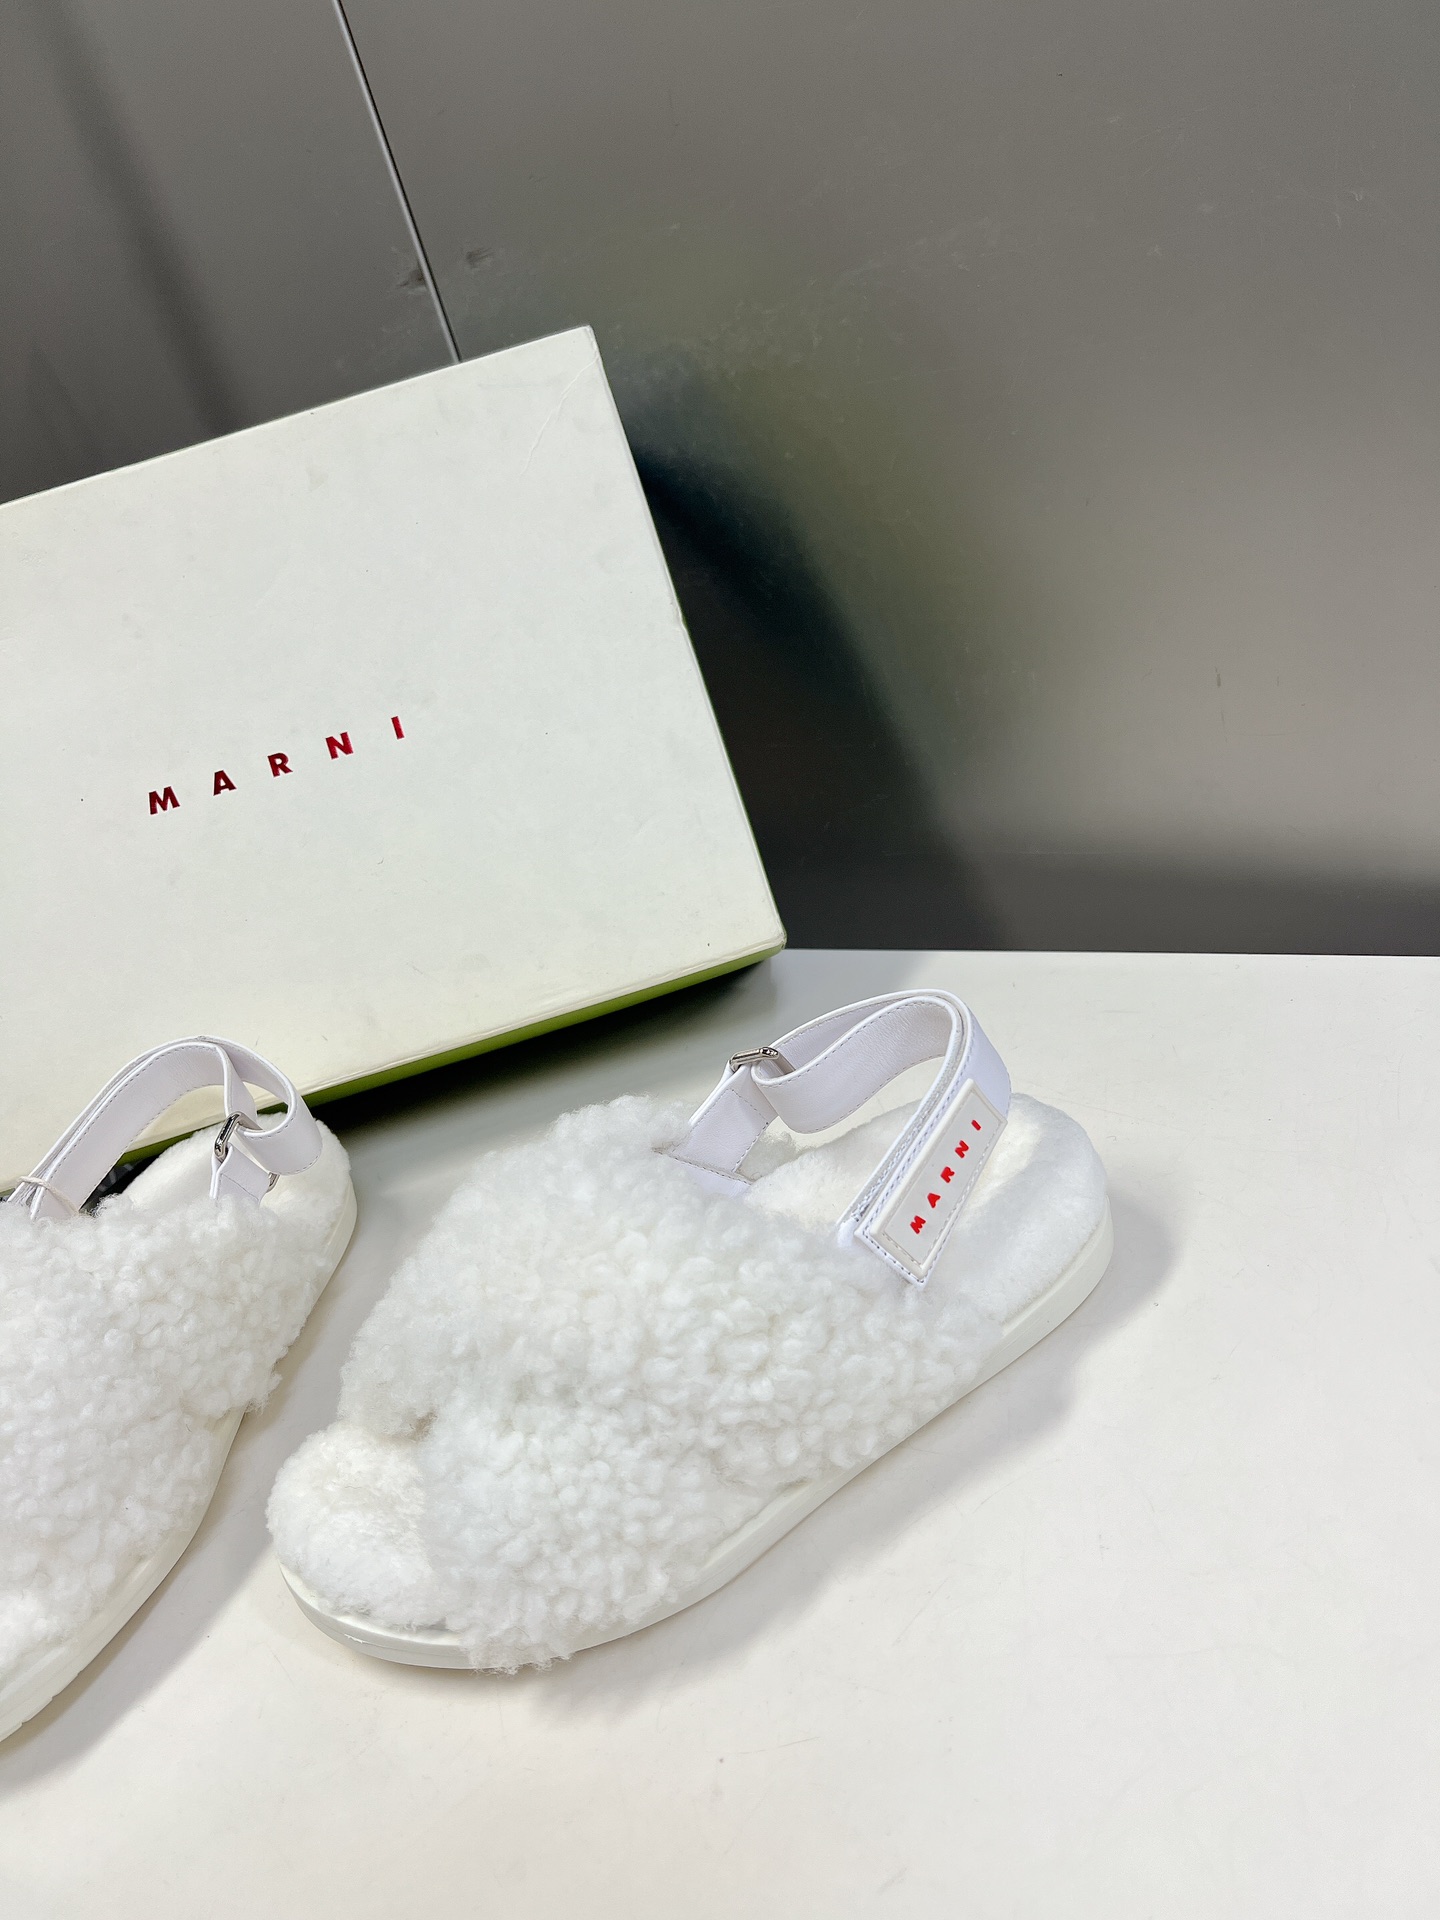 #玛尼新款毛毛凉鞋Marni是来自意大利的独立设计师品牌迅速走红国际时装界的一个著名品牌纯粹的奢华感是M